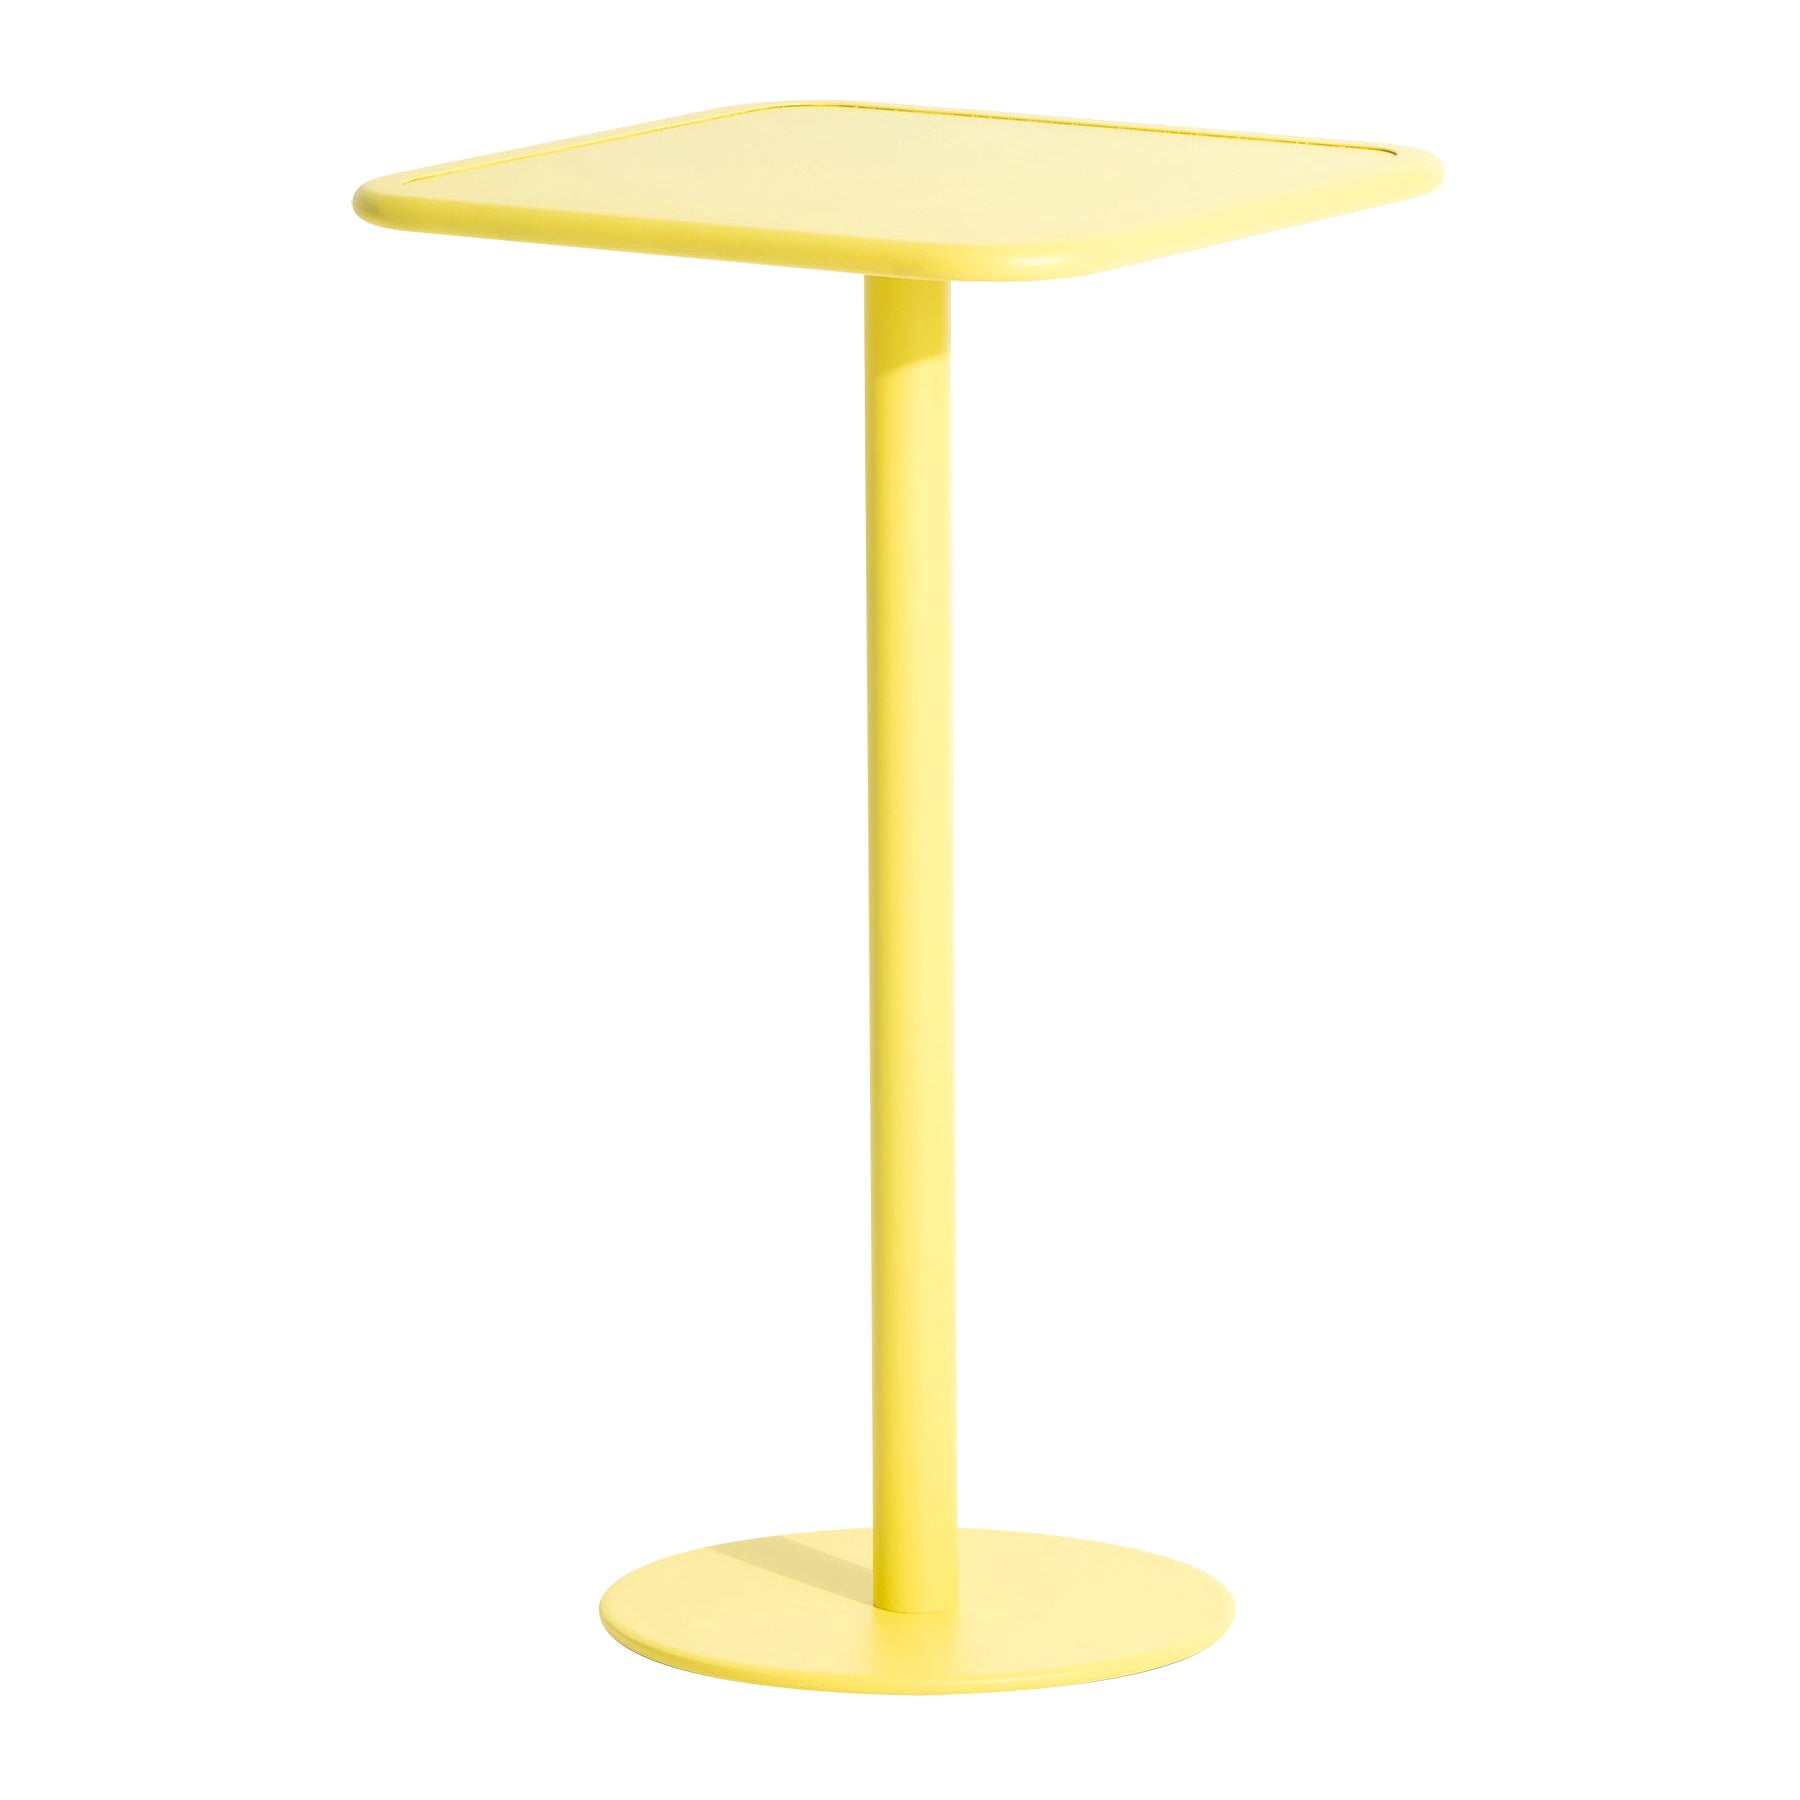 Petite table haute carrée Week-end en aluminium jaune de Friture, 2017